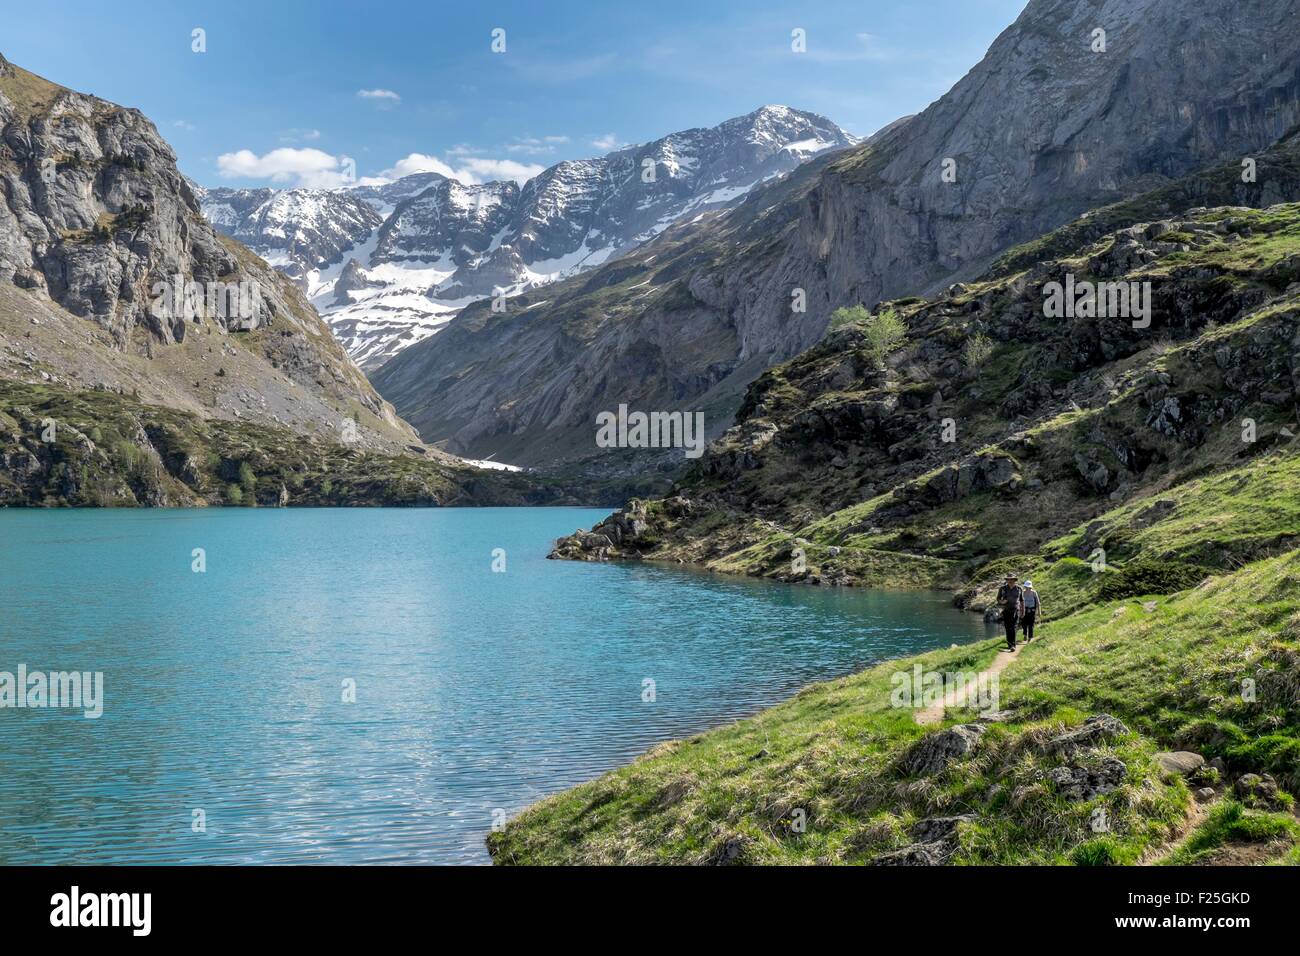 France, Hautes Pyrenees, Gedre, cirque d'Estaube valley, Gloriettes lake, Parc National des Pyrenees (Pyrenees National Park) Stock Photo